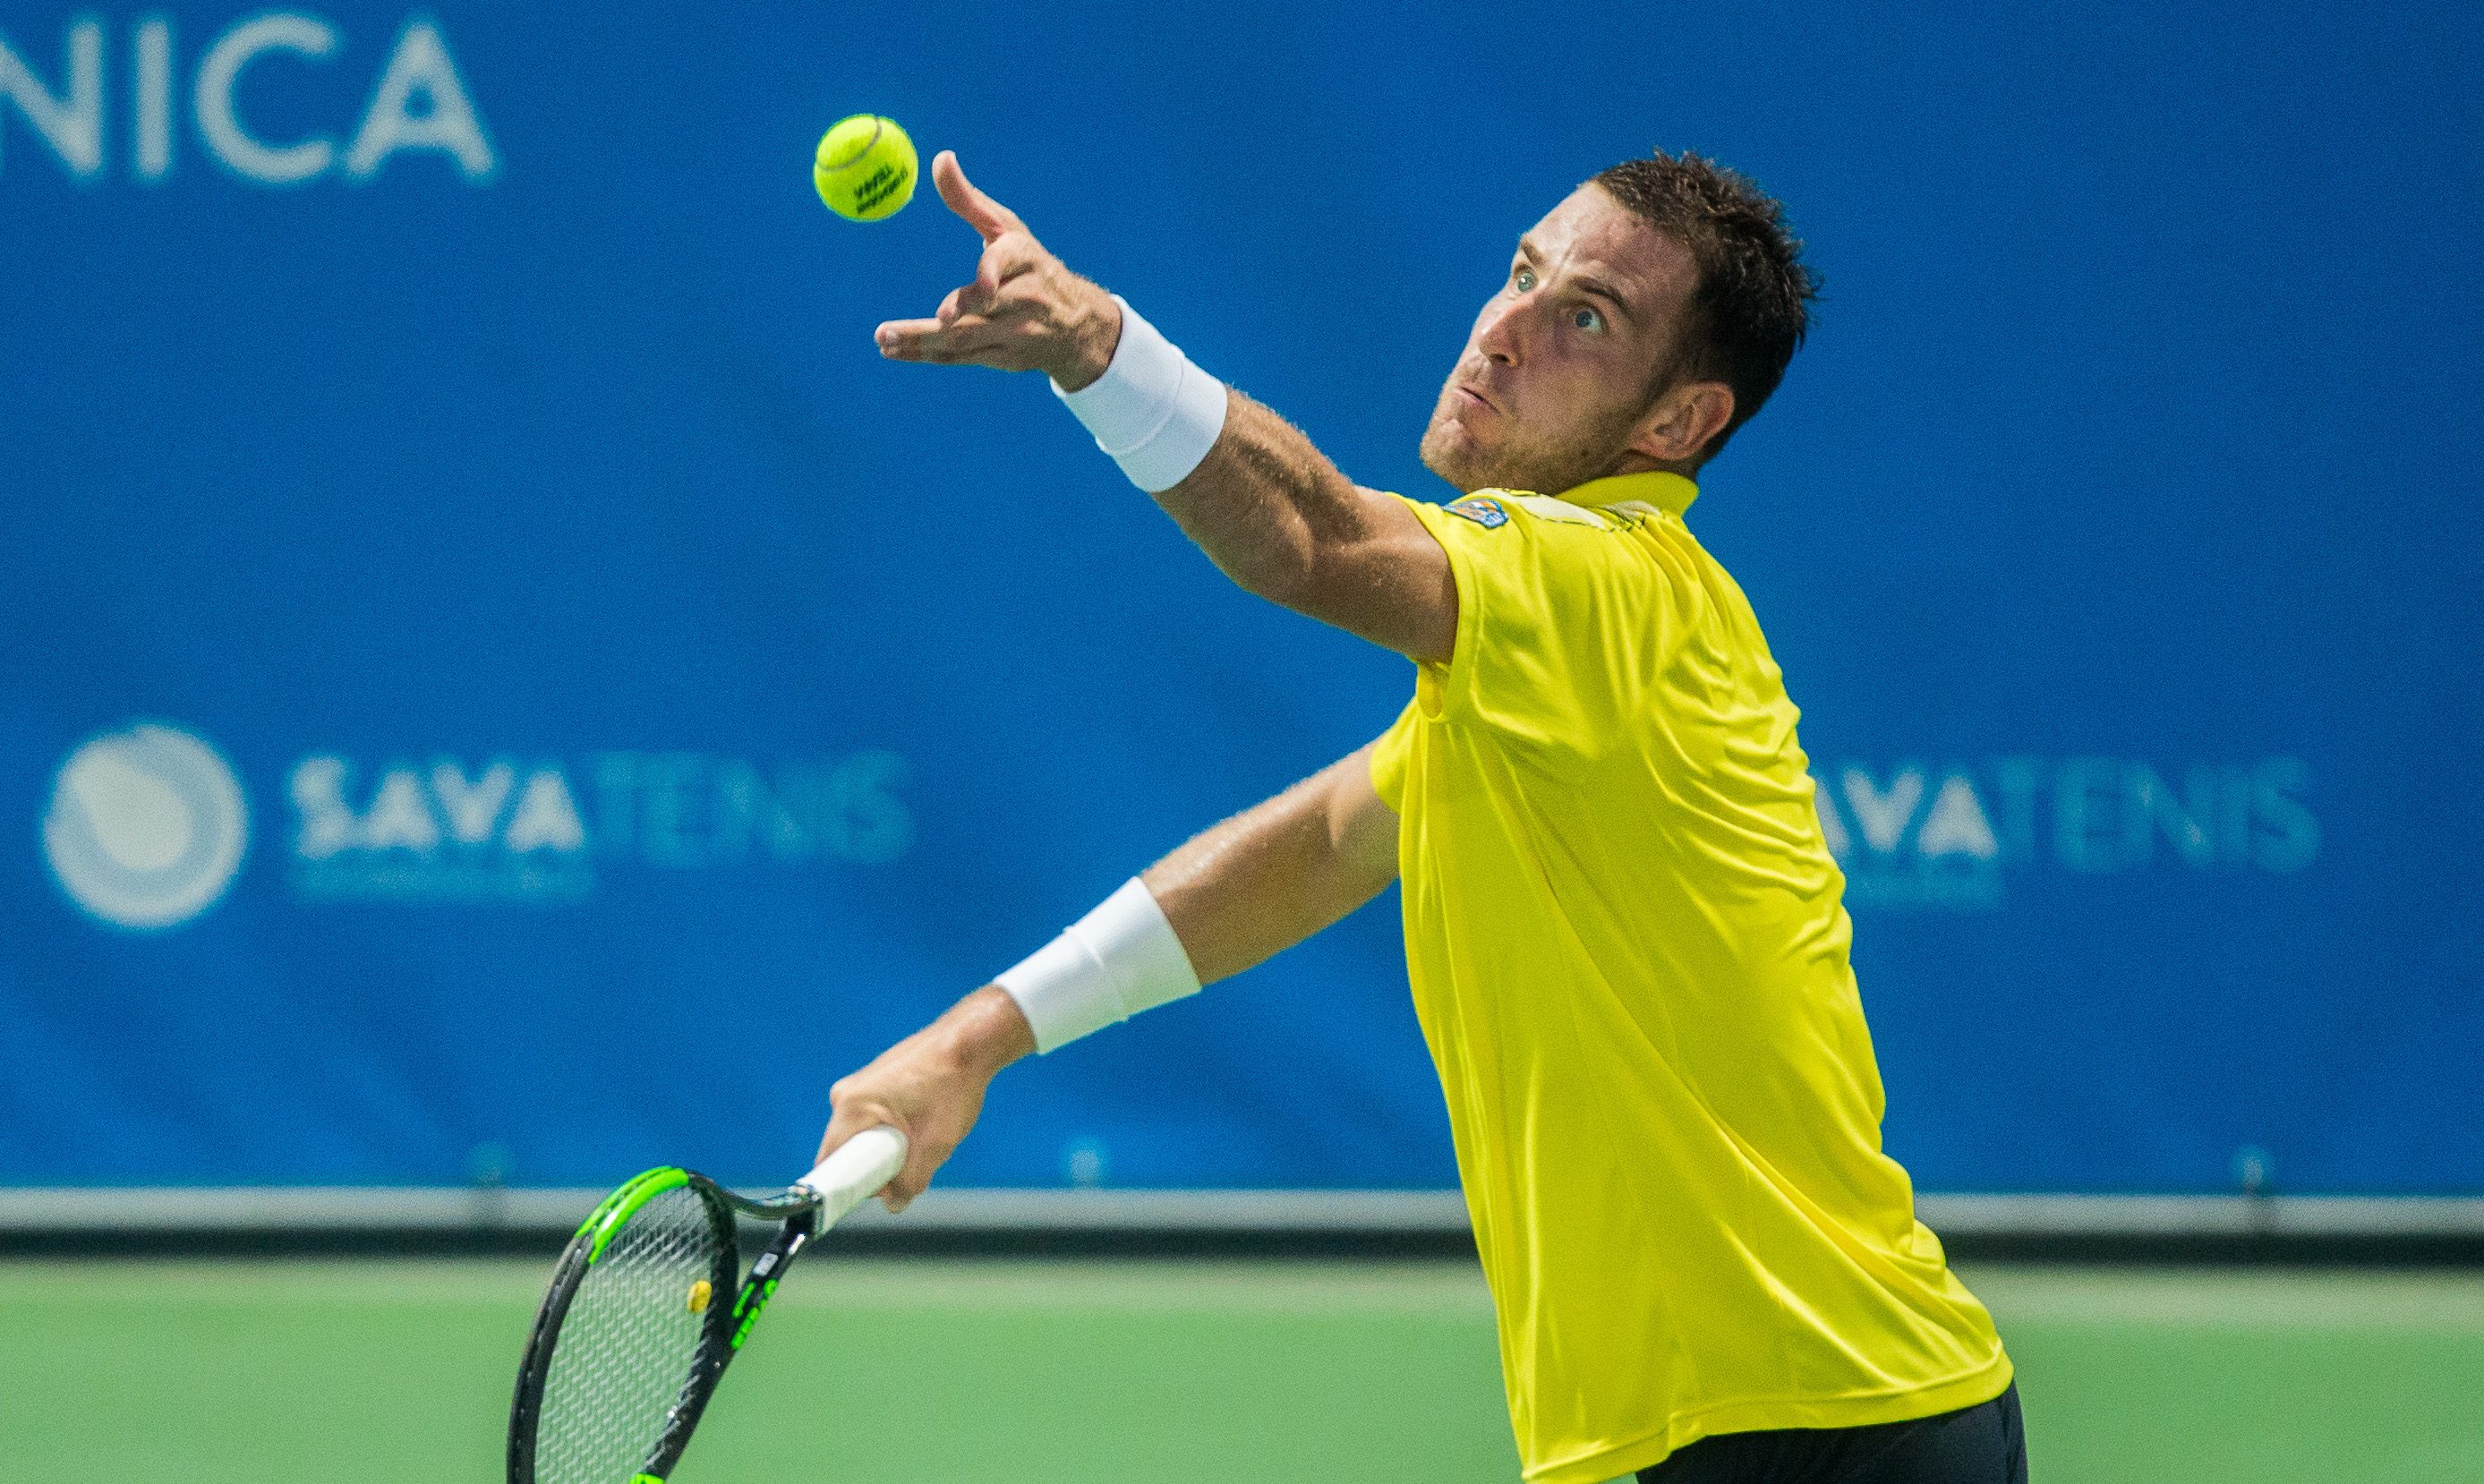 Lý Hoàng Nam thắng kịch tính tại vòng 1 giải ATP Challenger Kazakhstan